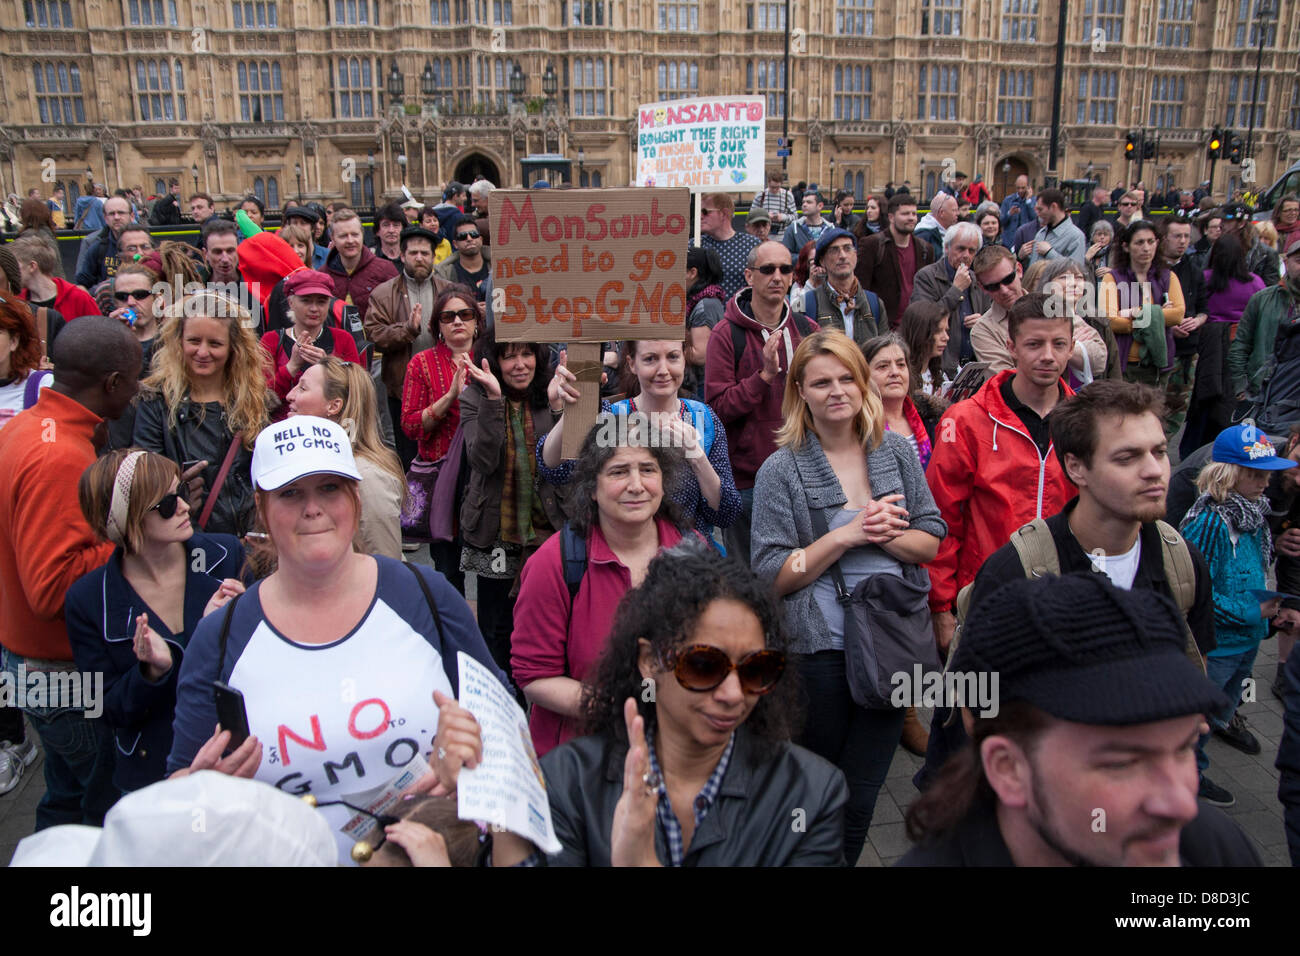 2013-05-25 Westminster, Londres. Les protestataires manifesté à l'extérieur le Parlement contre les cultures génétiquement modifiées, la géo-ingénierie et de semences Monsanto géant. Banque D'Images